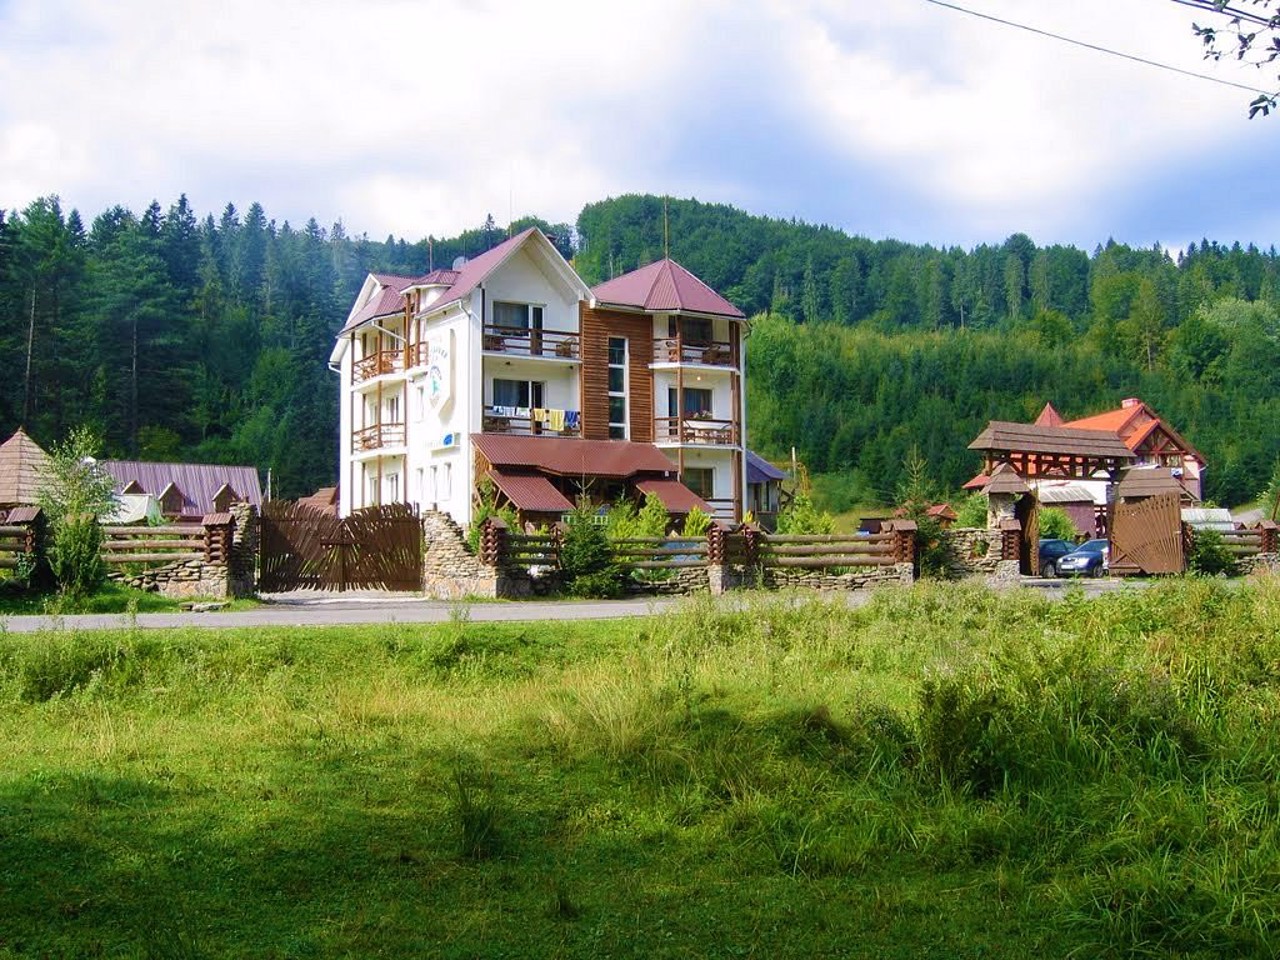 Zhdeniievo village